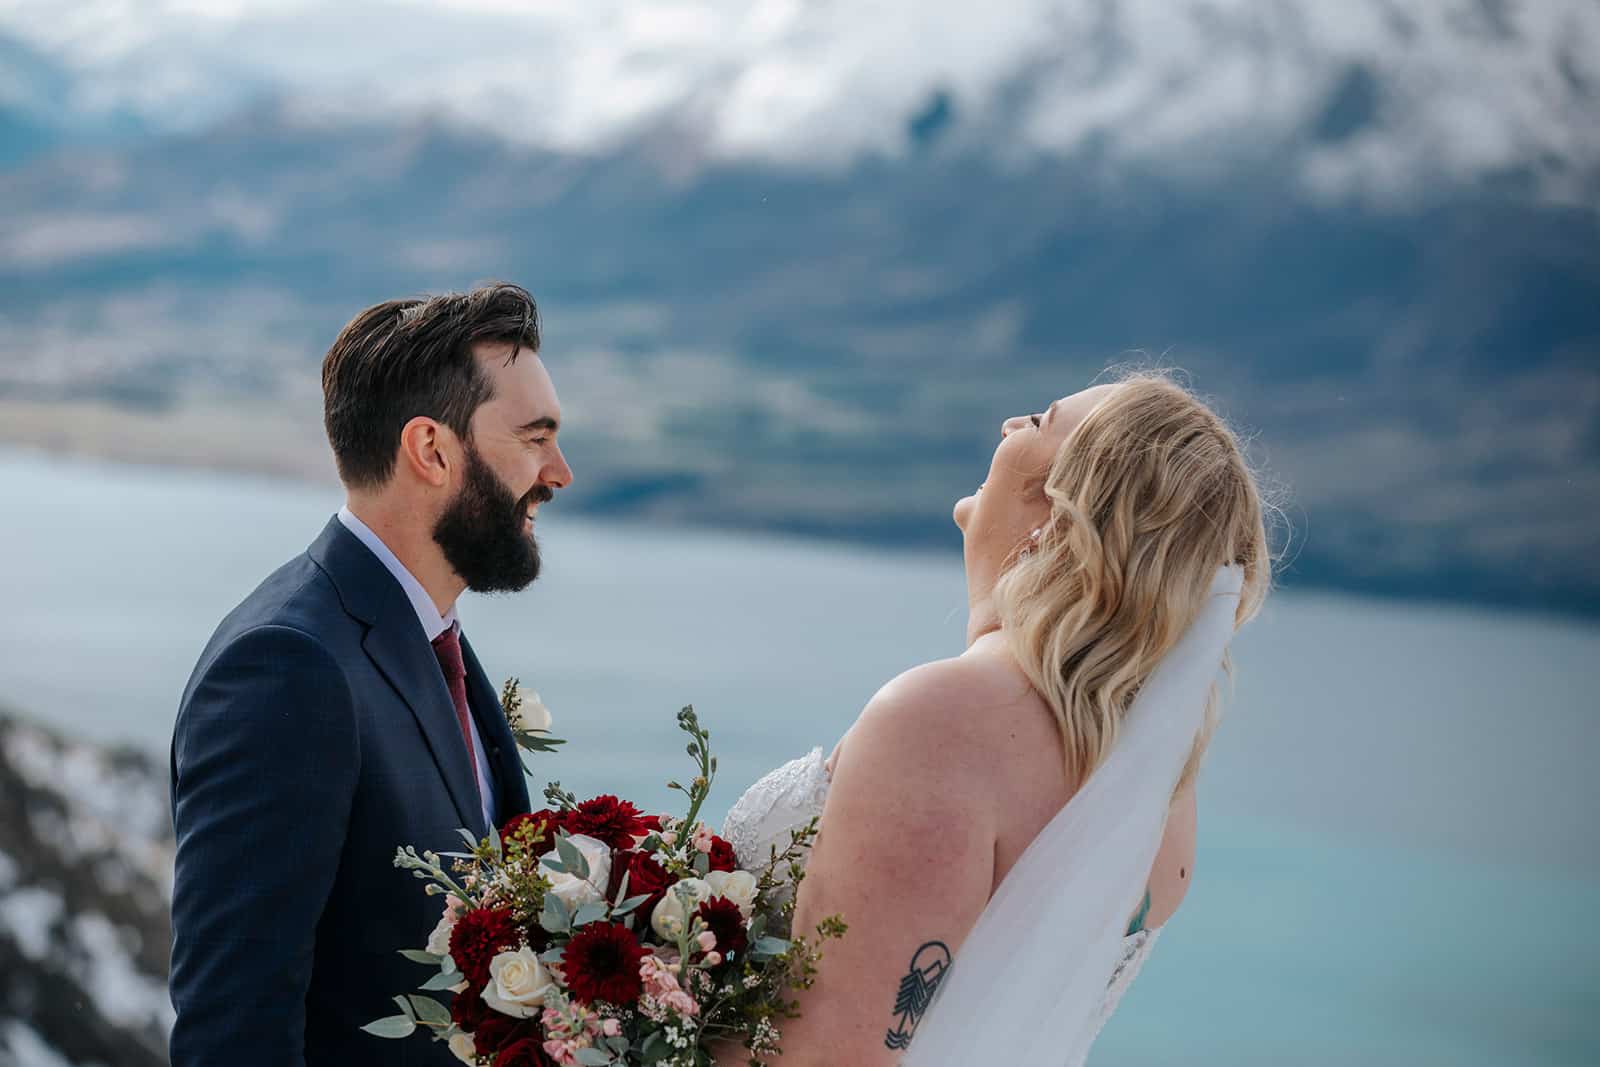 Winter Heli Wedding in Queenstown New Zealand